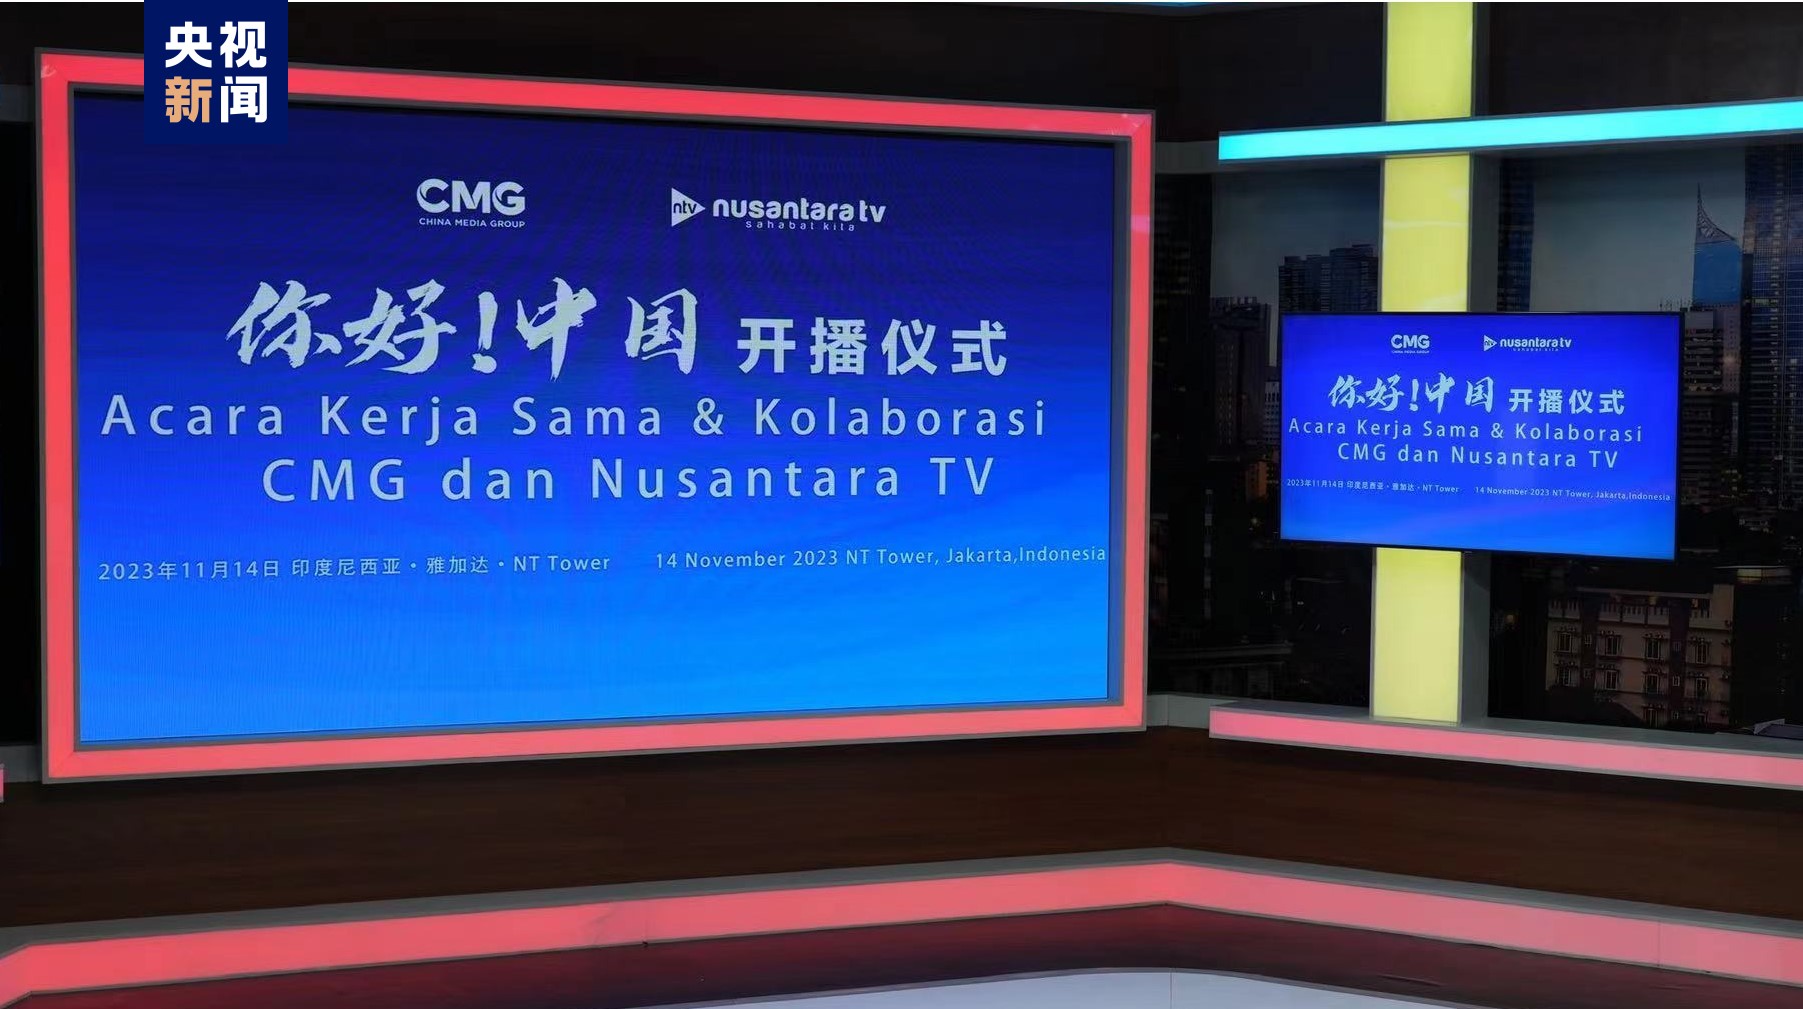 #ChinaMediaGroupCMG चाइना मिडिया ग्रुप तथा इन्डोनेशिया नुसान्तारा टी भी स्टेशनको सहकार्यमा हेलो चाइना कार्यक्रमको प्रसारण शुरू